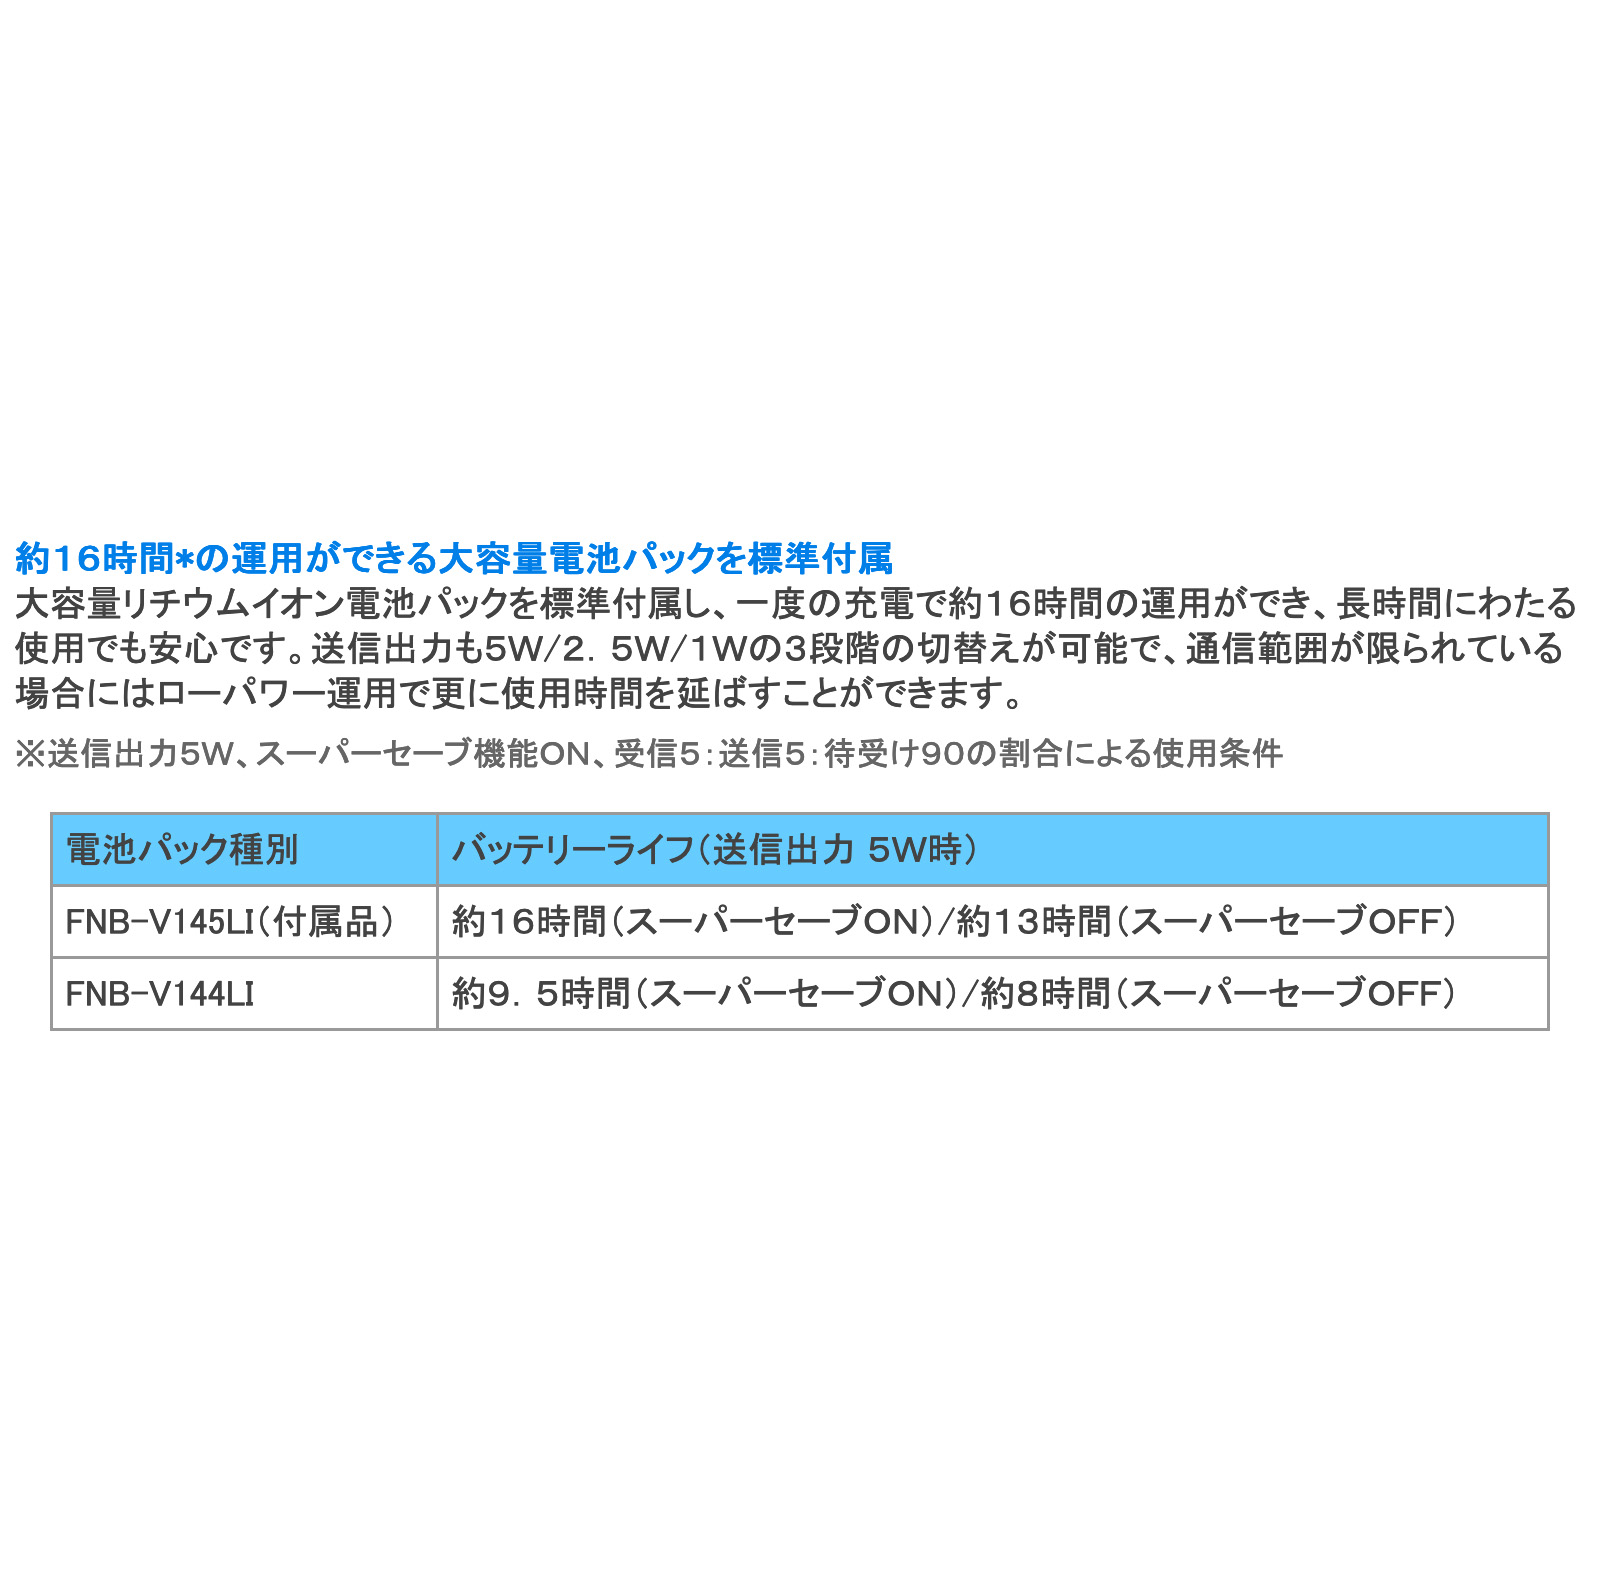 株式会社コムネットジャパン / スタンダード 5W デジタル簡易無線登録